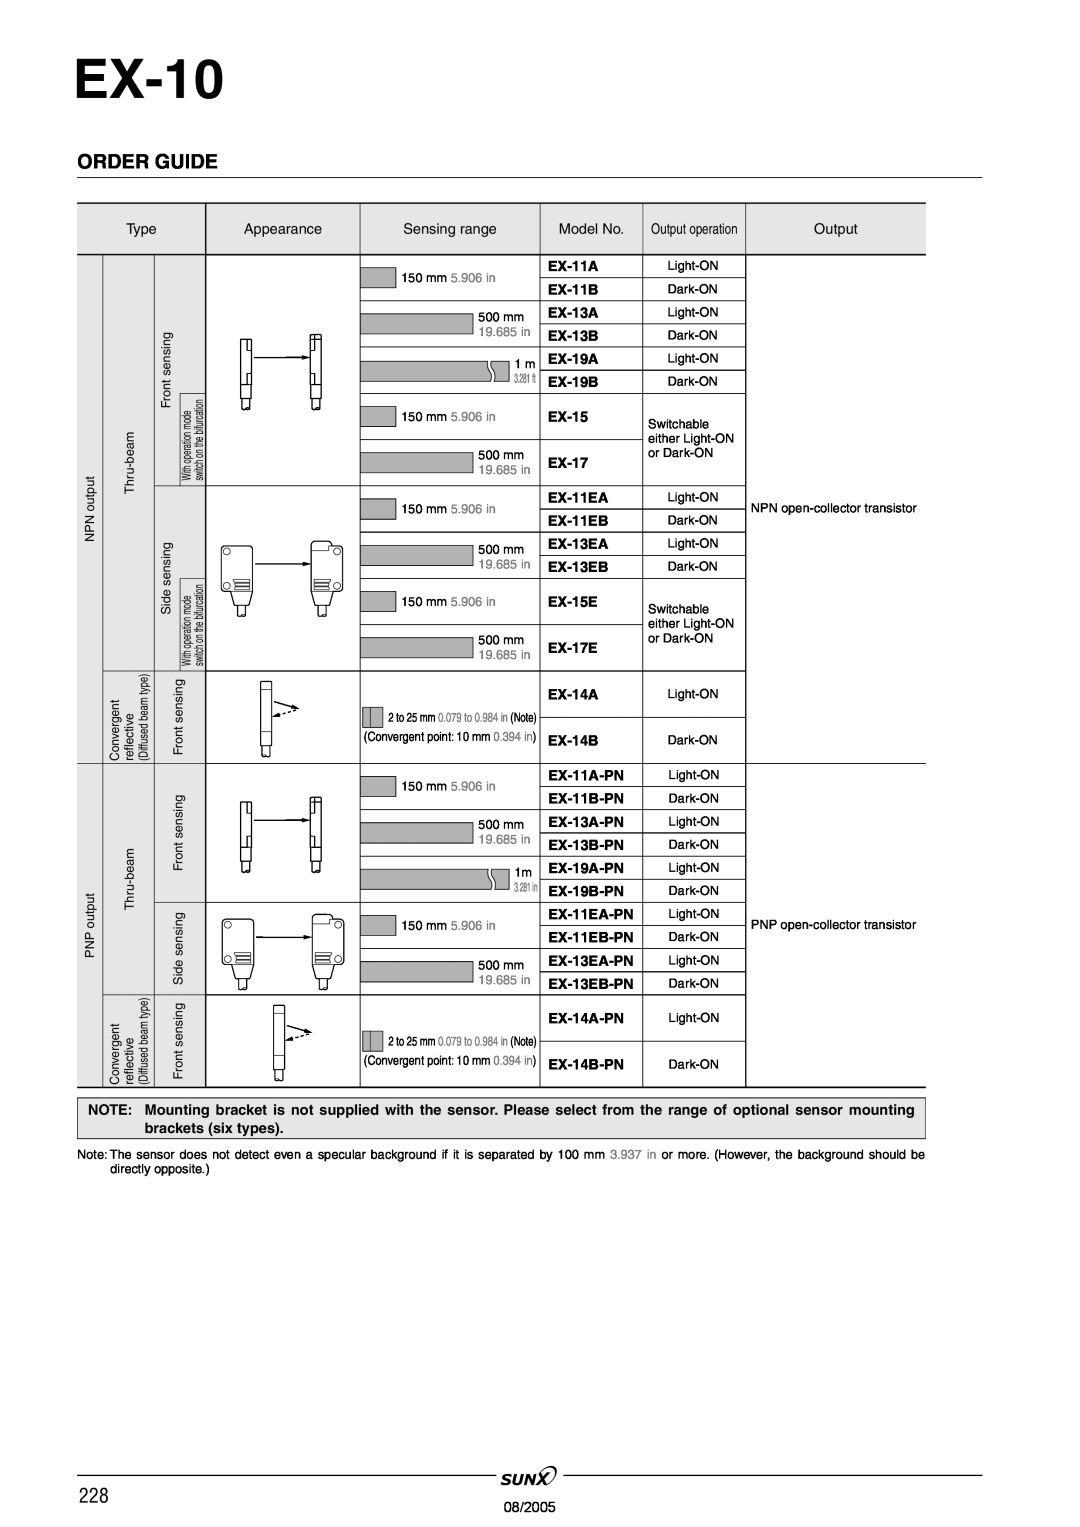 Panasonic EX-10 Series manual Order Guide 